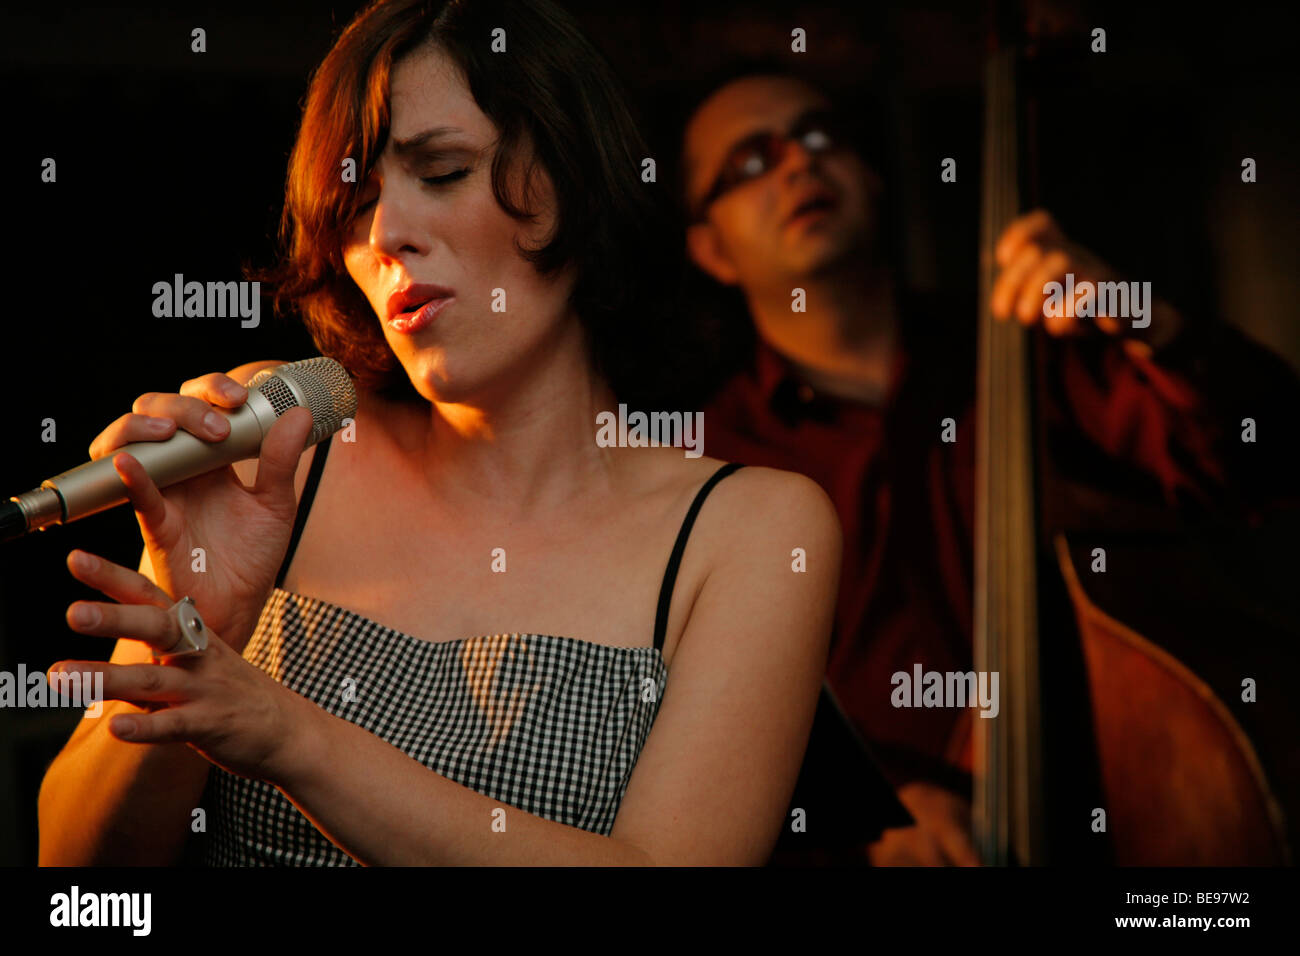 Jazz singer singing. Stock Photo